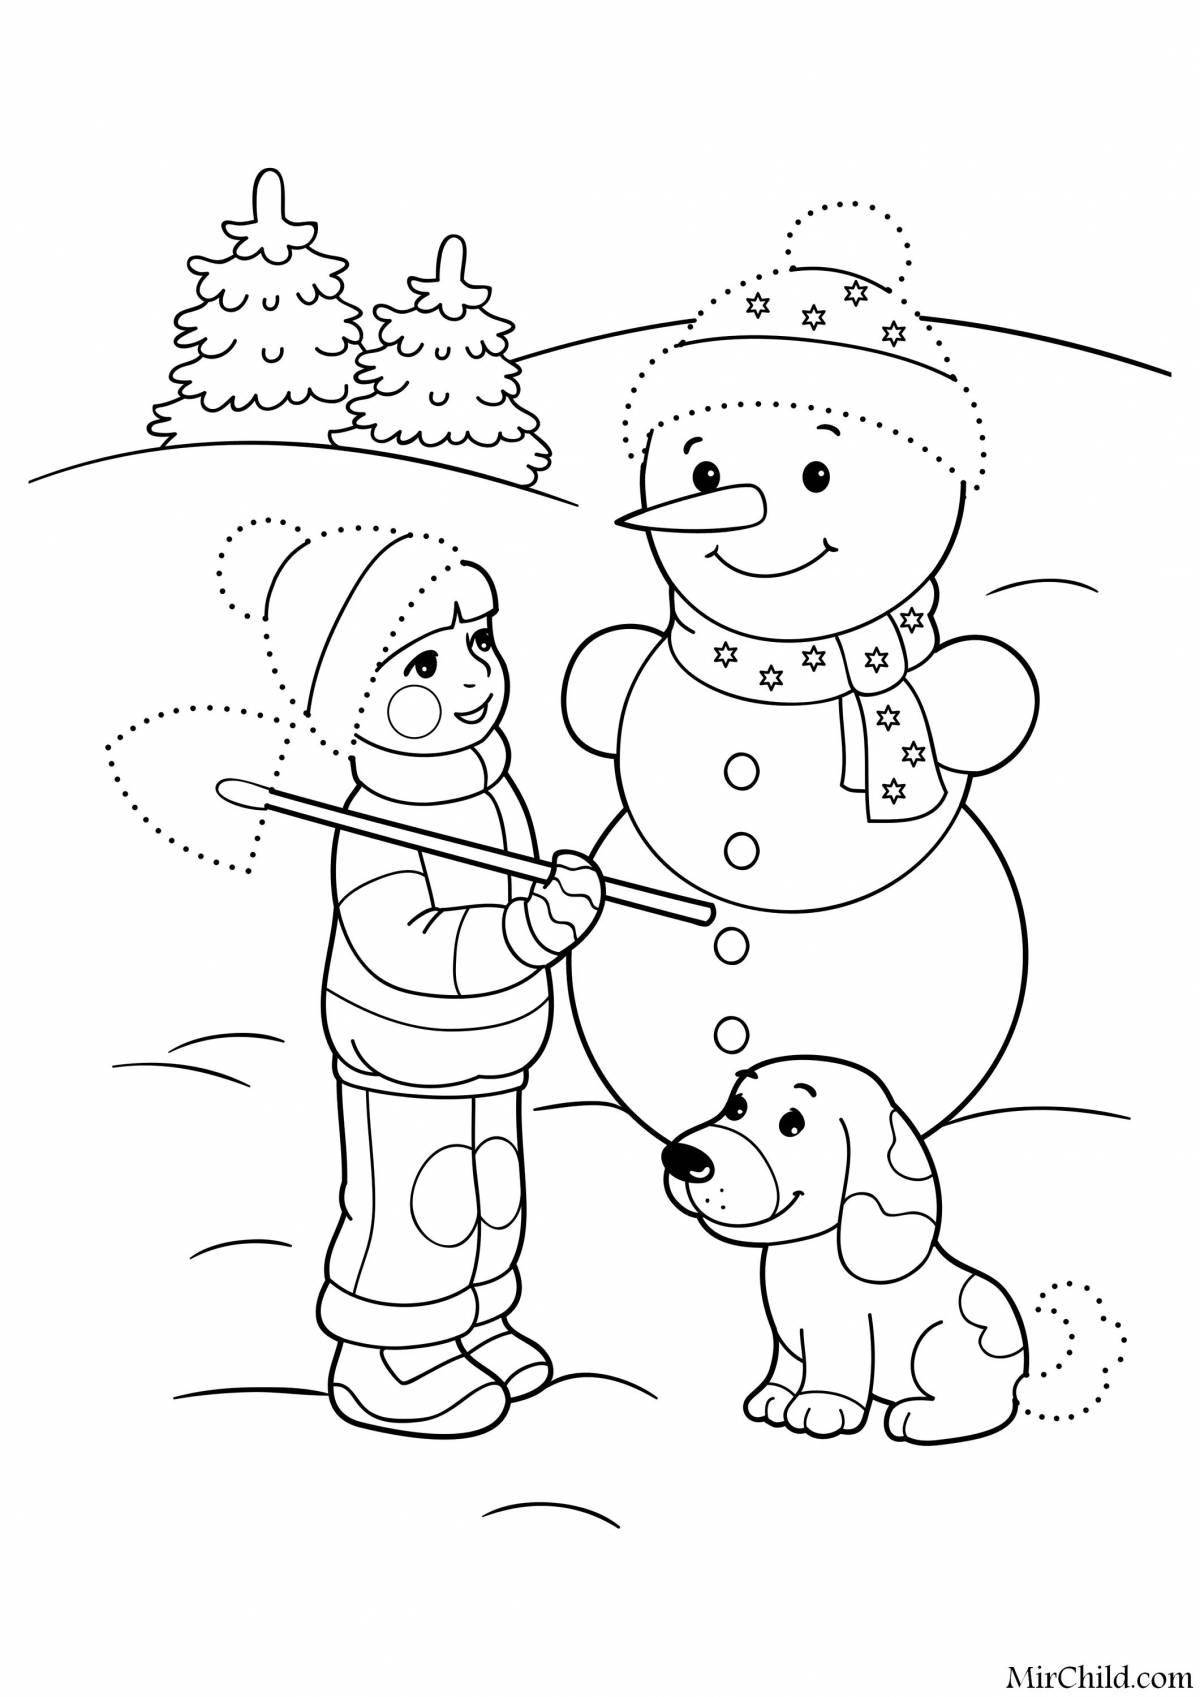 Праздничная раскраска снеговик для детей 6-7 лет